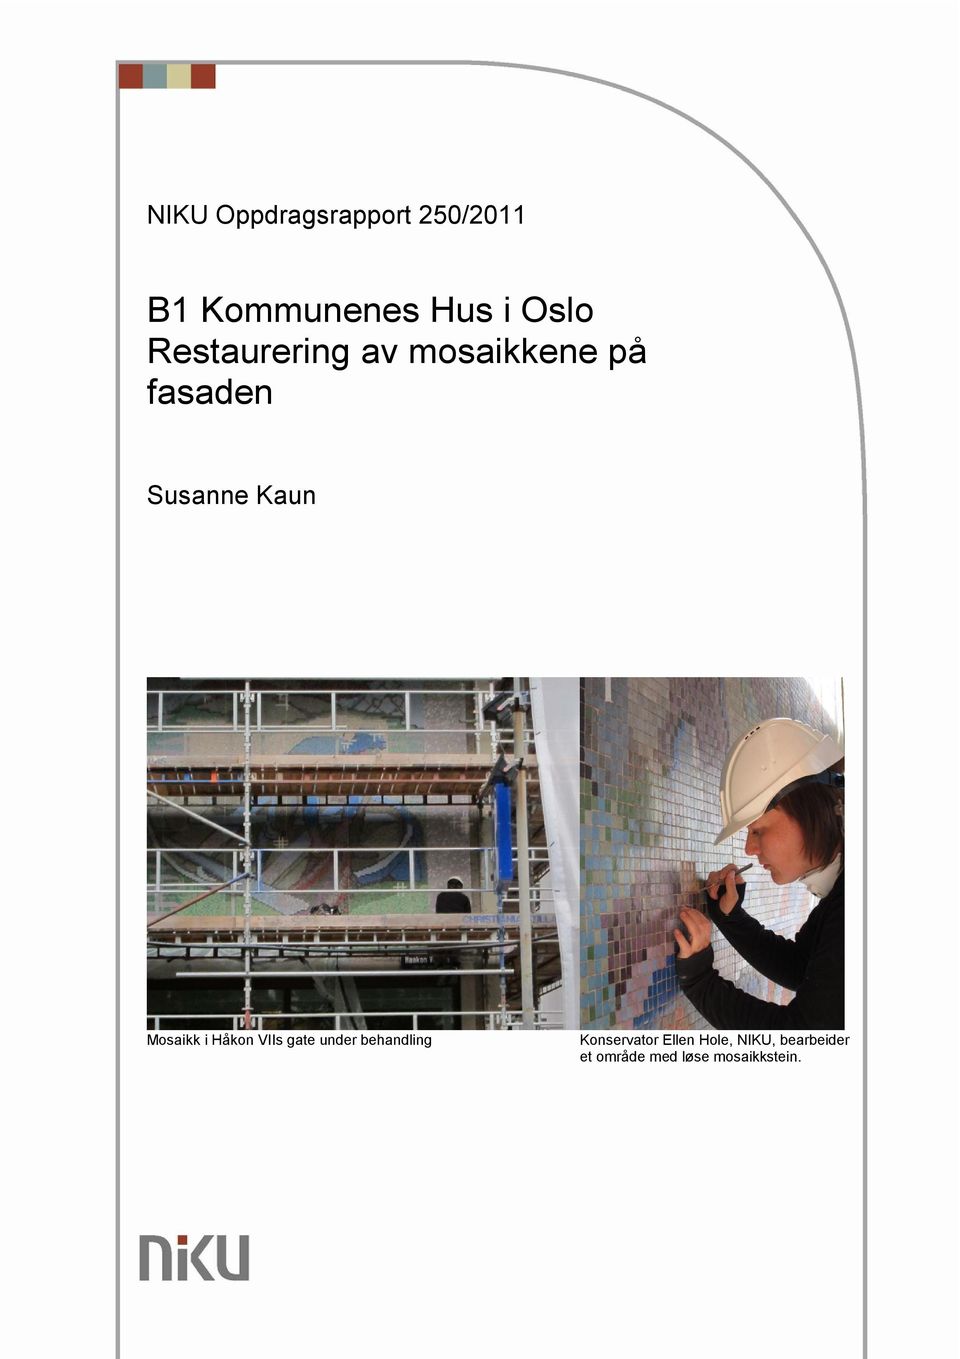 Mosaikk i Håkon VIIs gate under behandling Konservator